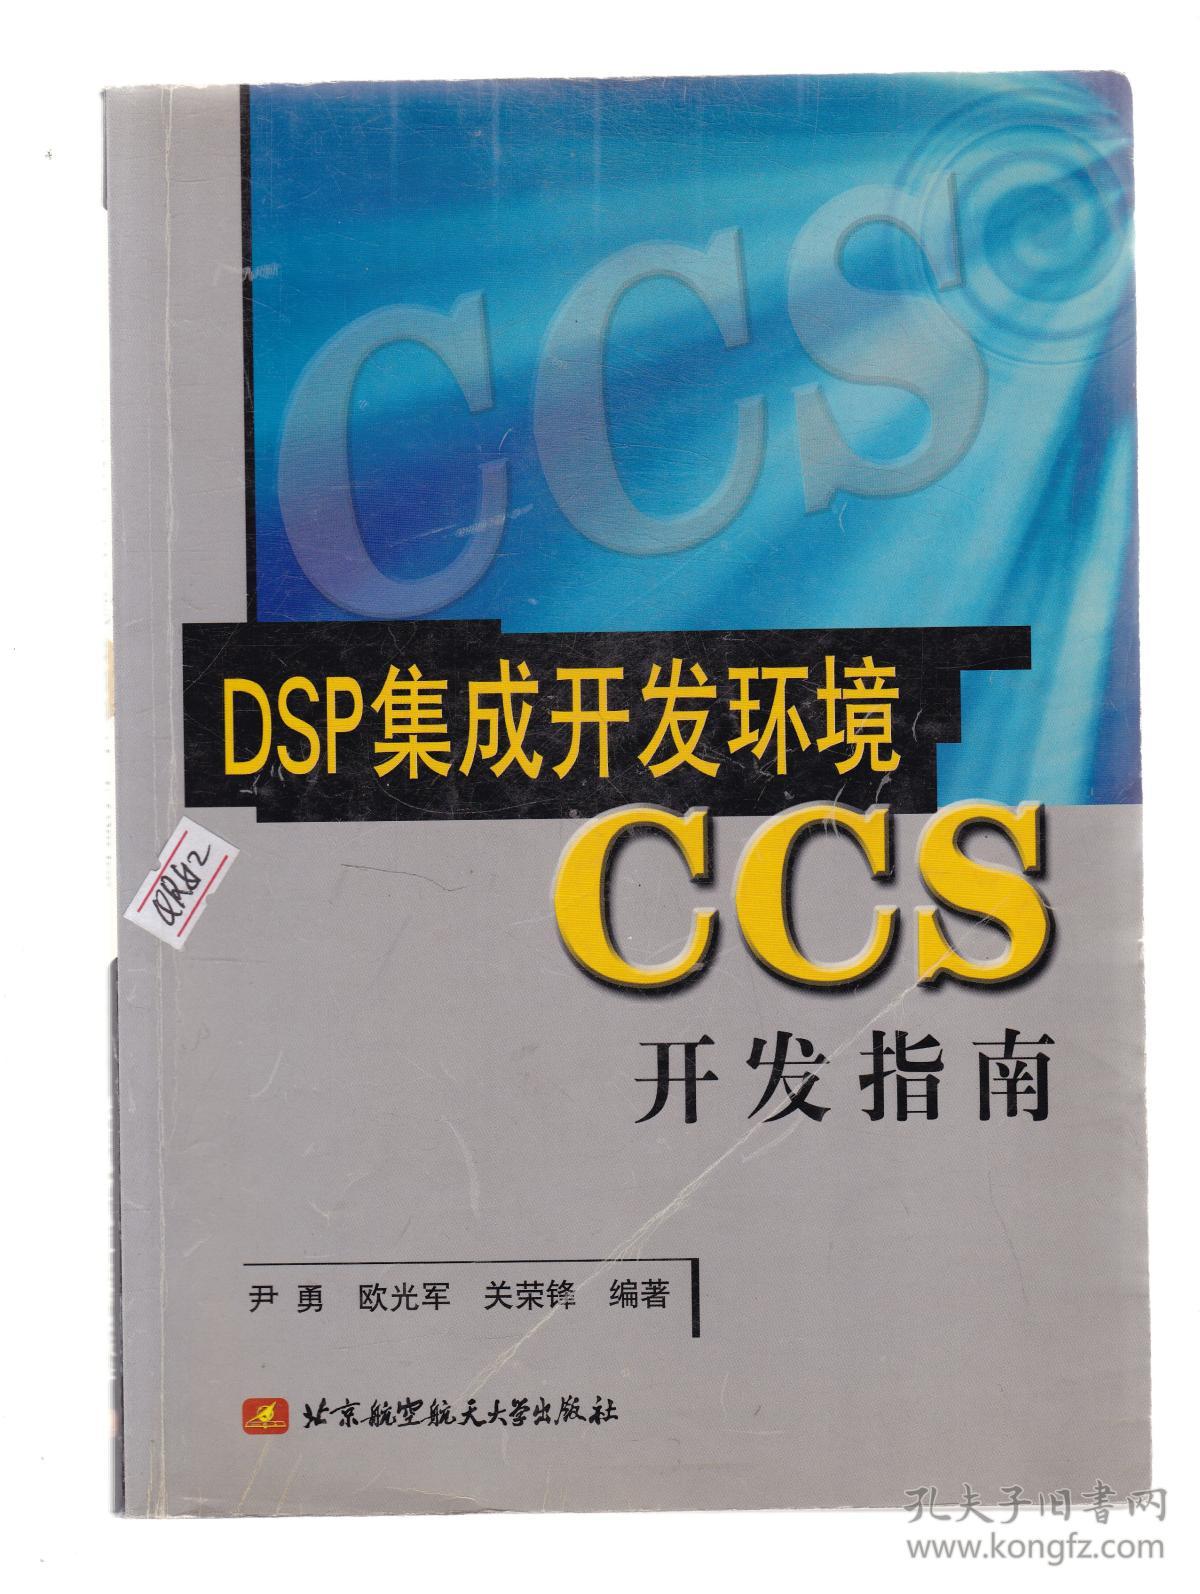 DSP集成开发环境CCS开发指南